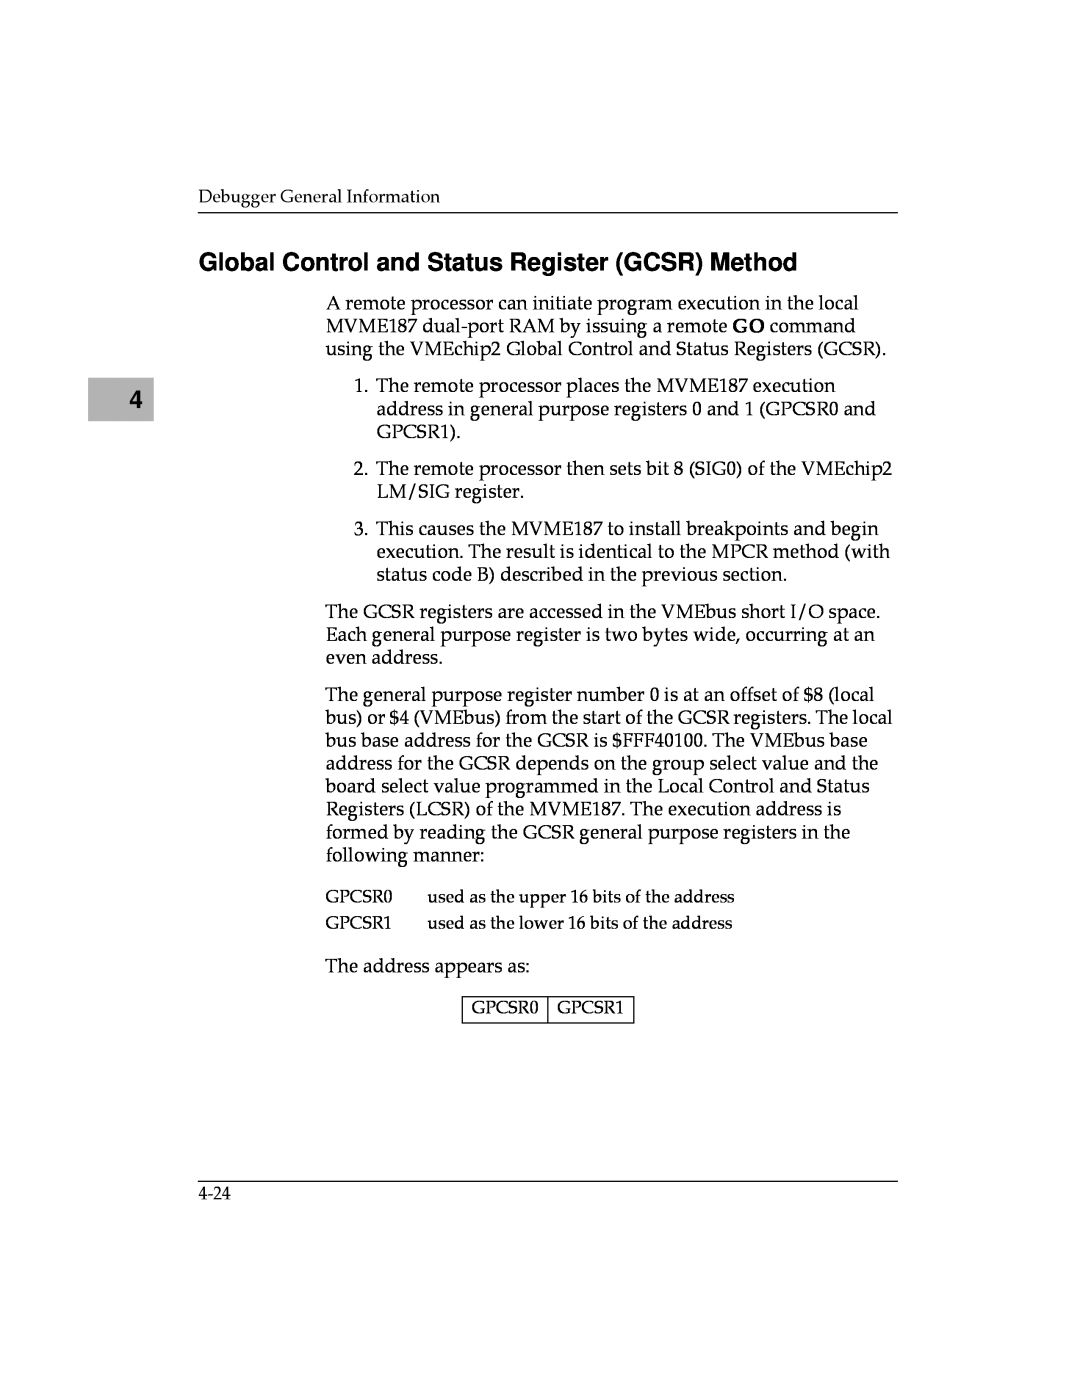 Motorola MVME187 manual Global Control and Status Register GCSR Method 